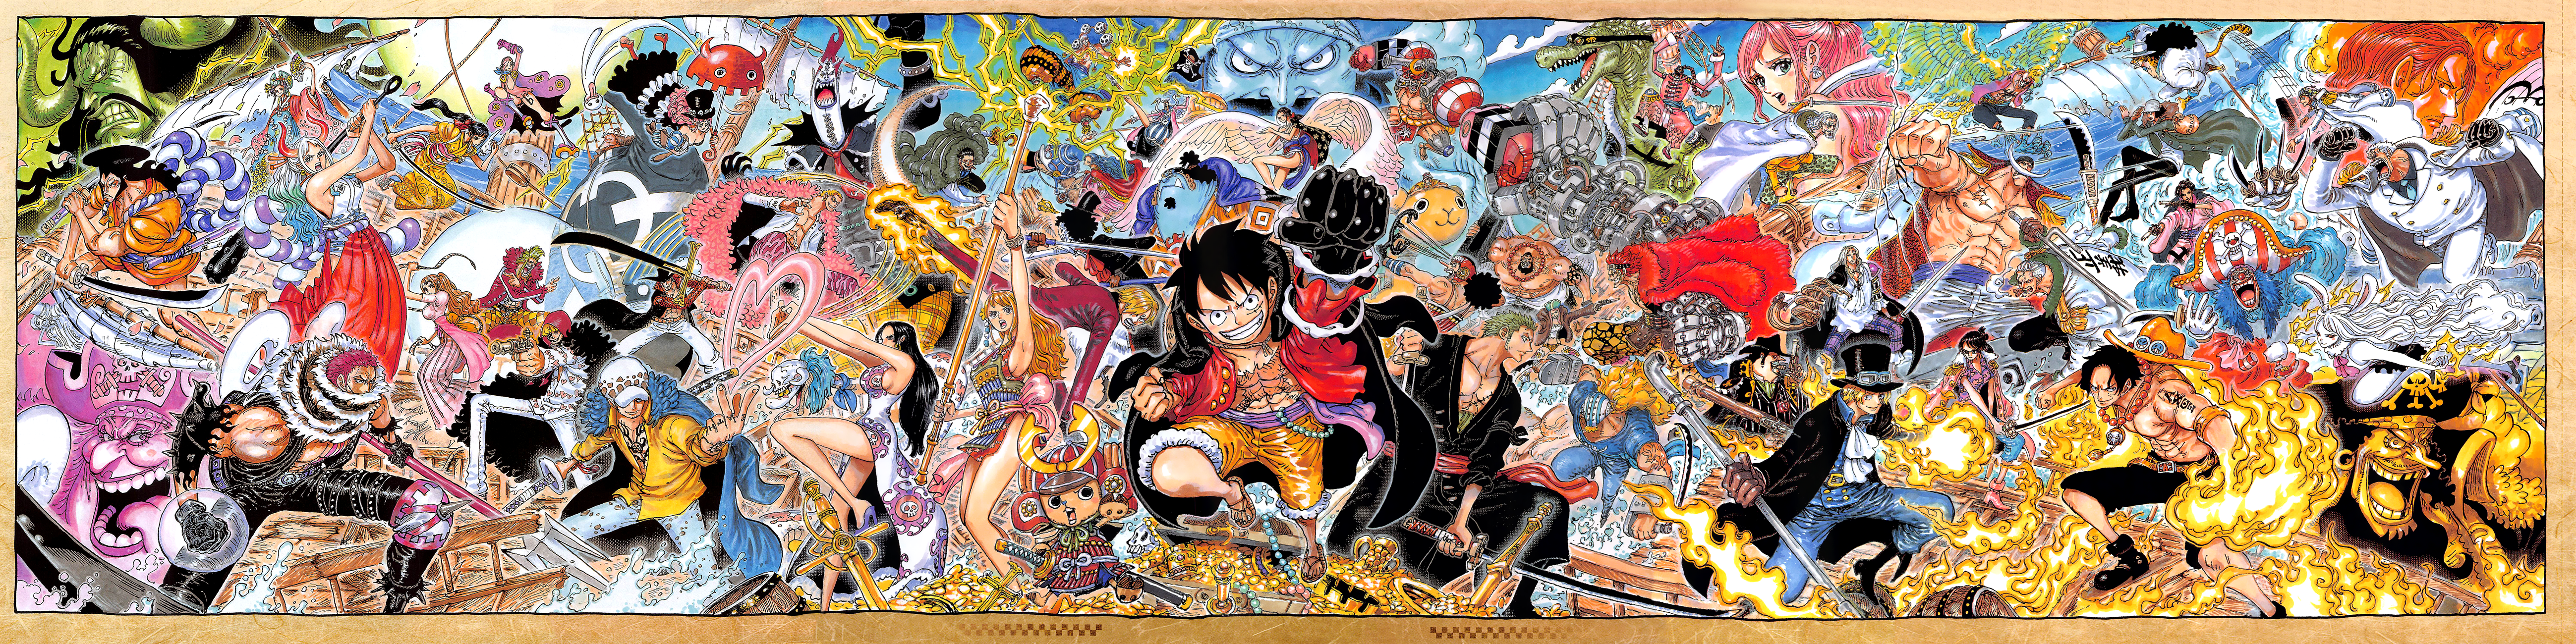 One Piece Cartoon Japan 5197x1300